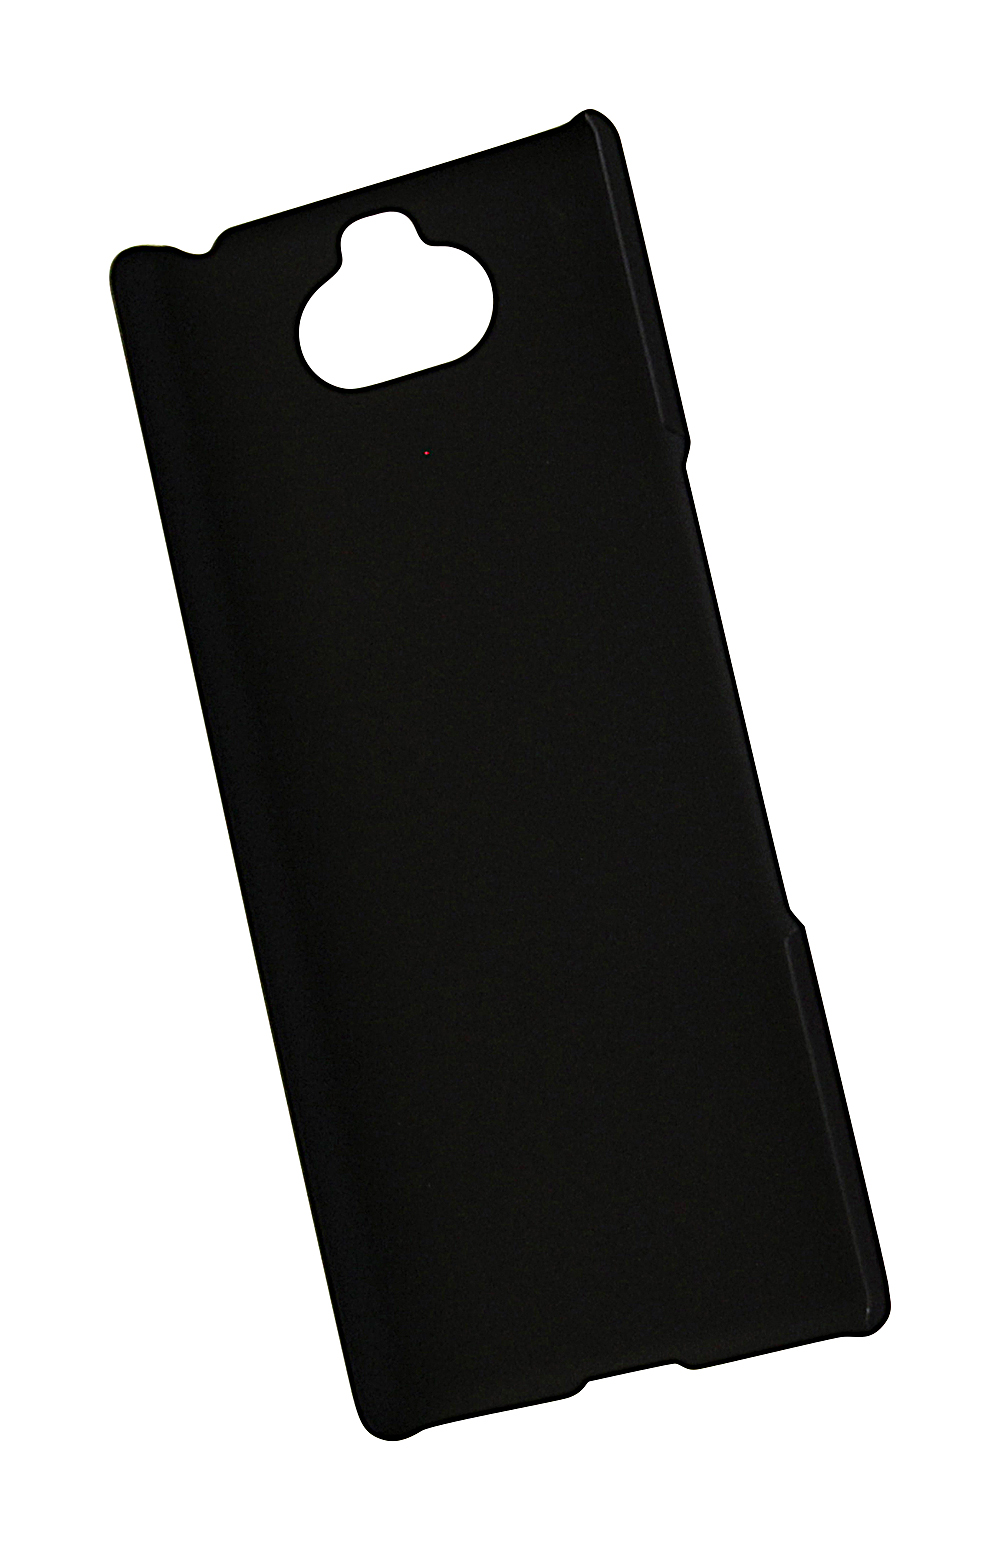 CoverIn Skimblocker Magneettikotelo Sony Xperia 10